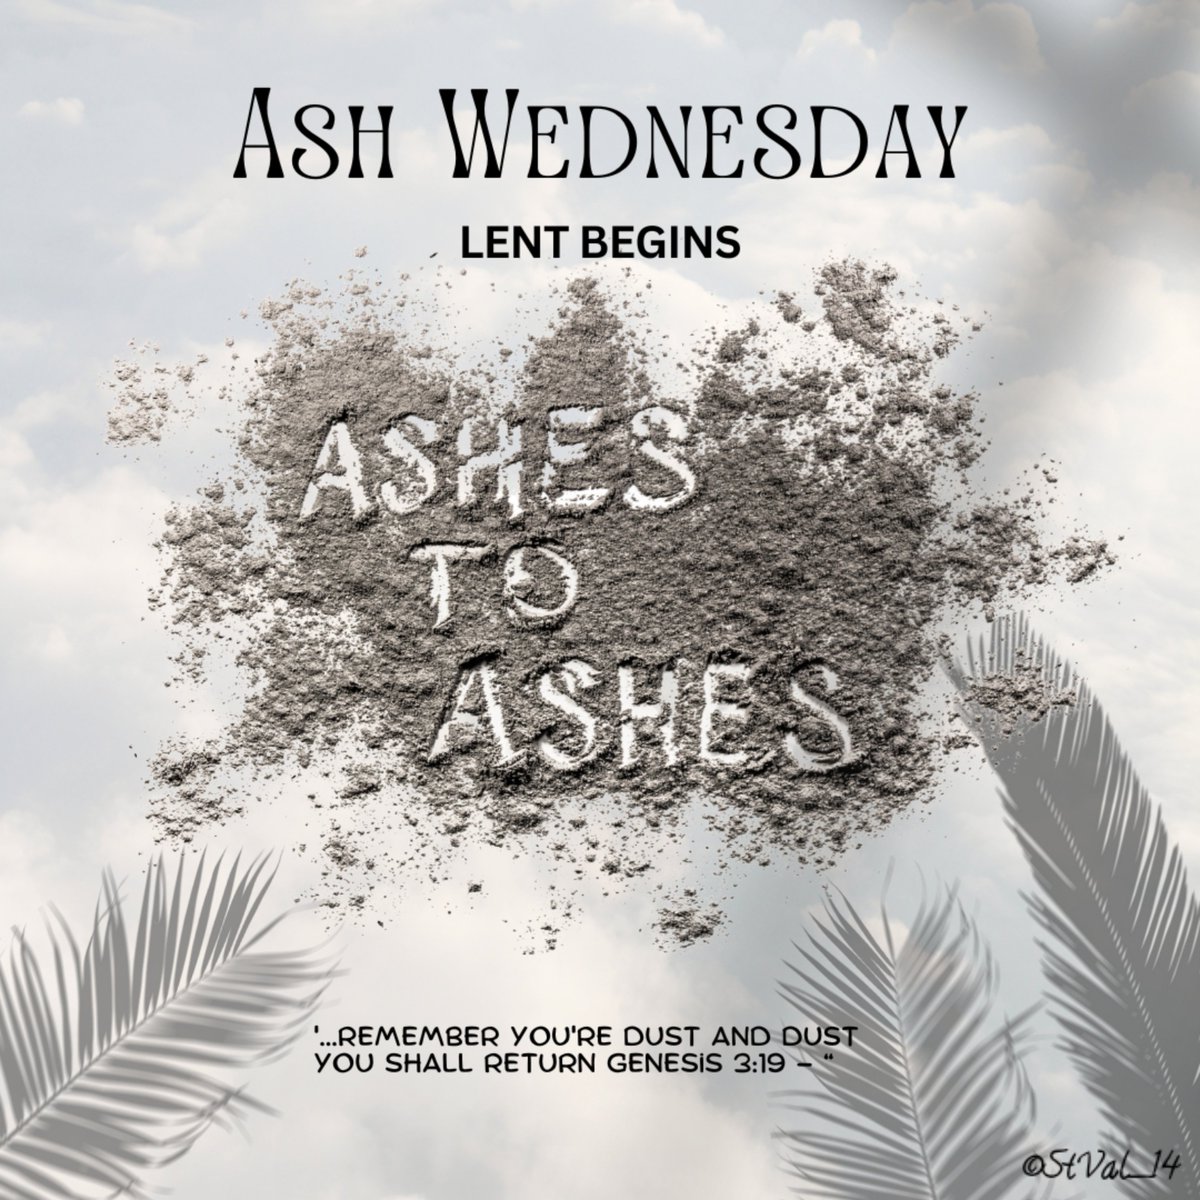 Remember you're dust and dust you shall return ✝️
#AshWednesday 
#LentenSeason 
#Lent 
#Lent2024